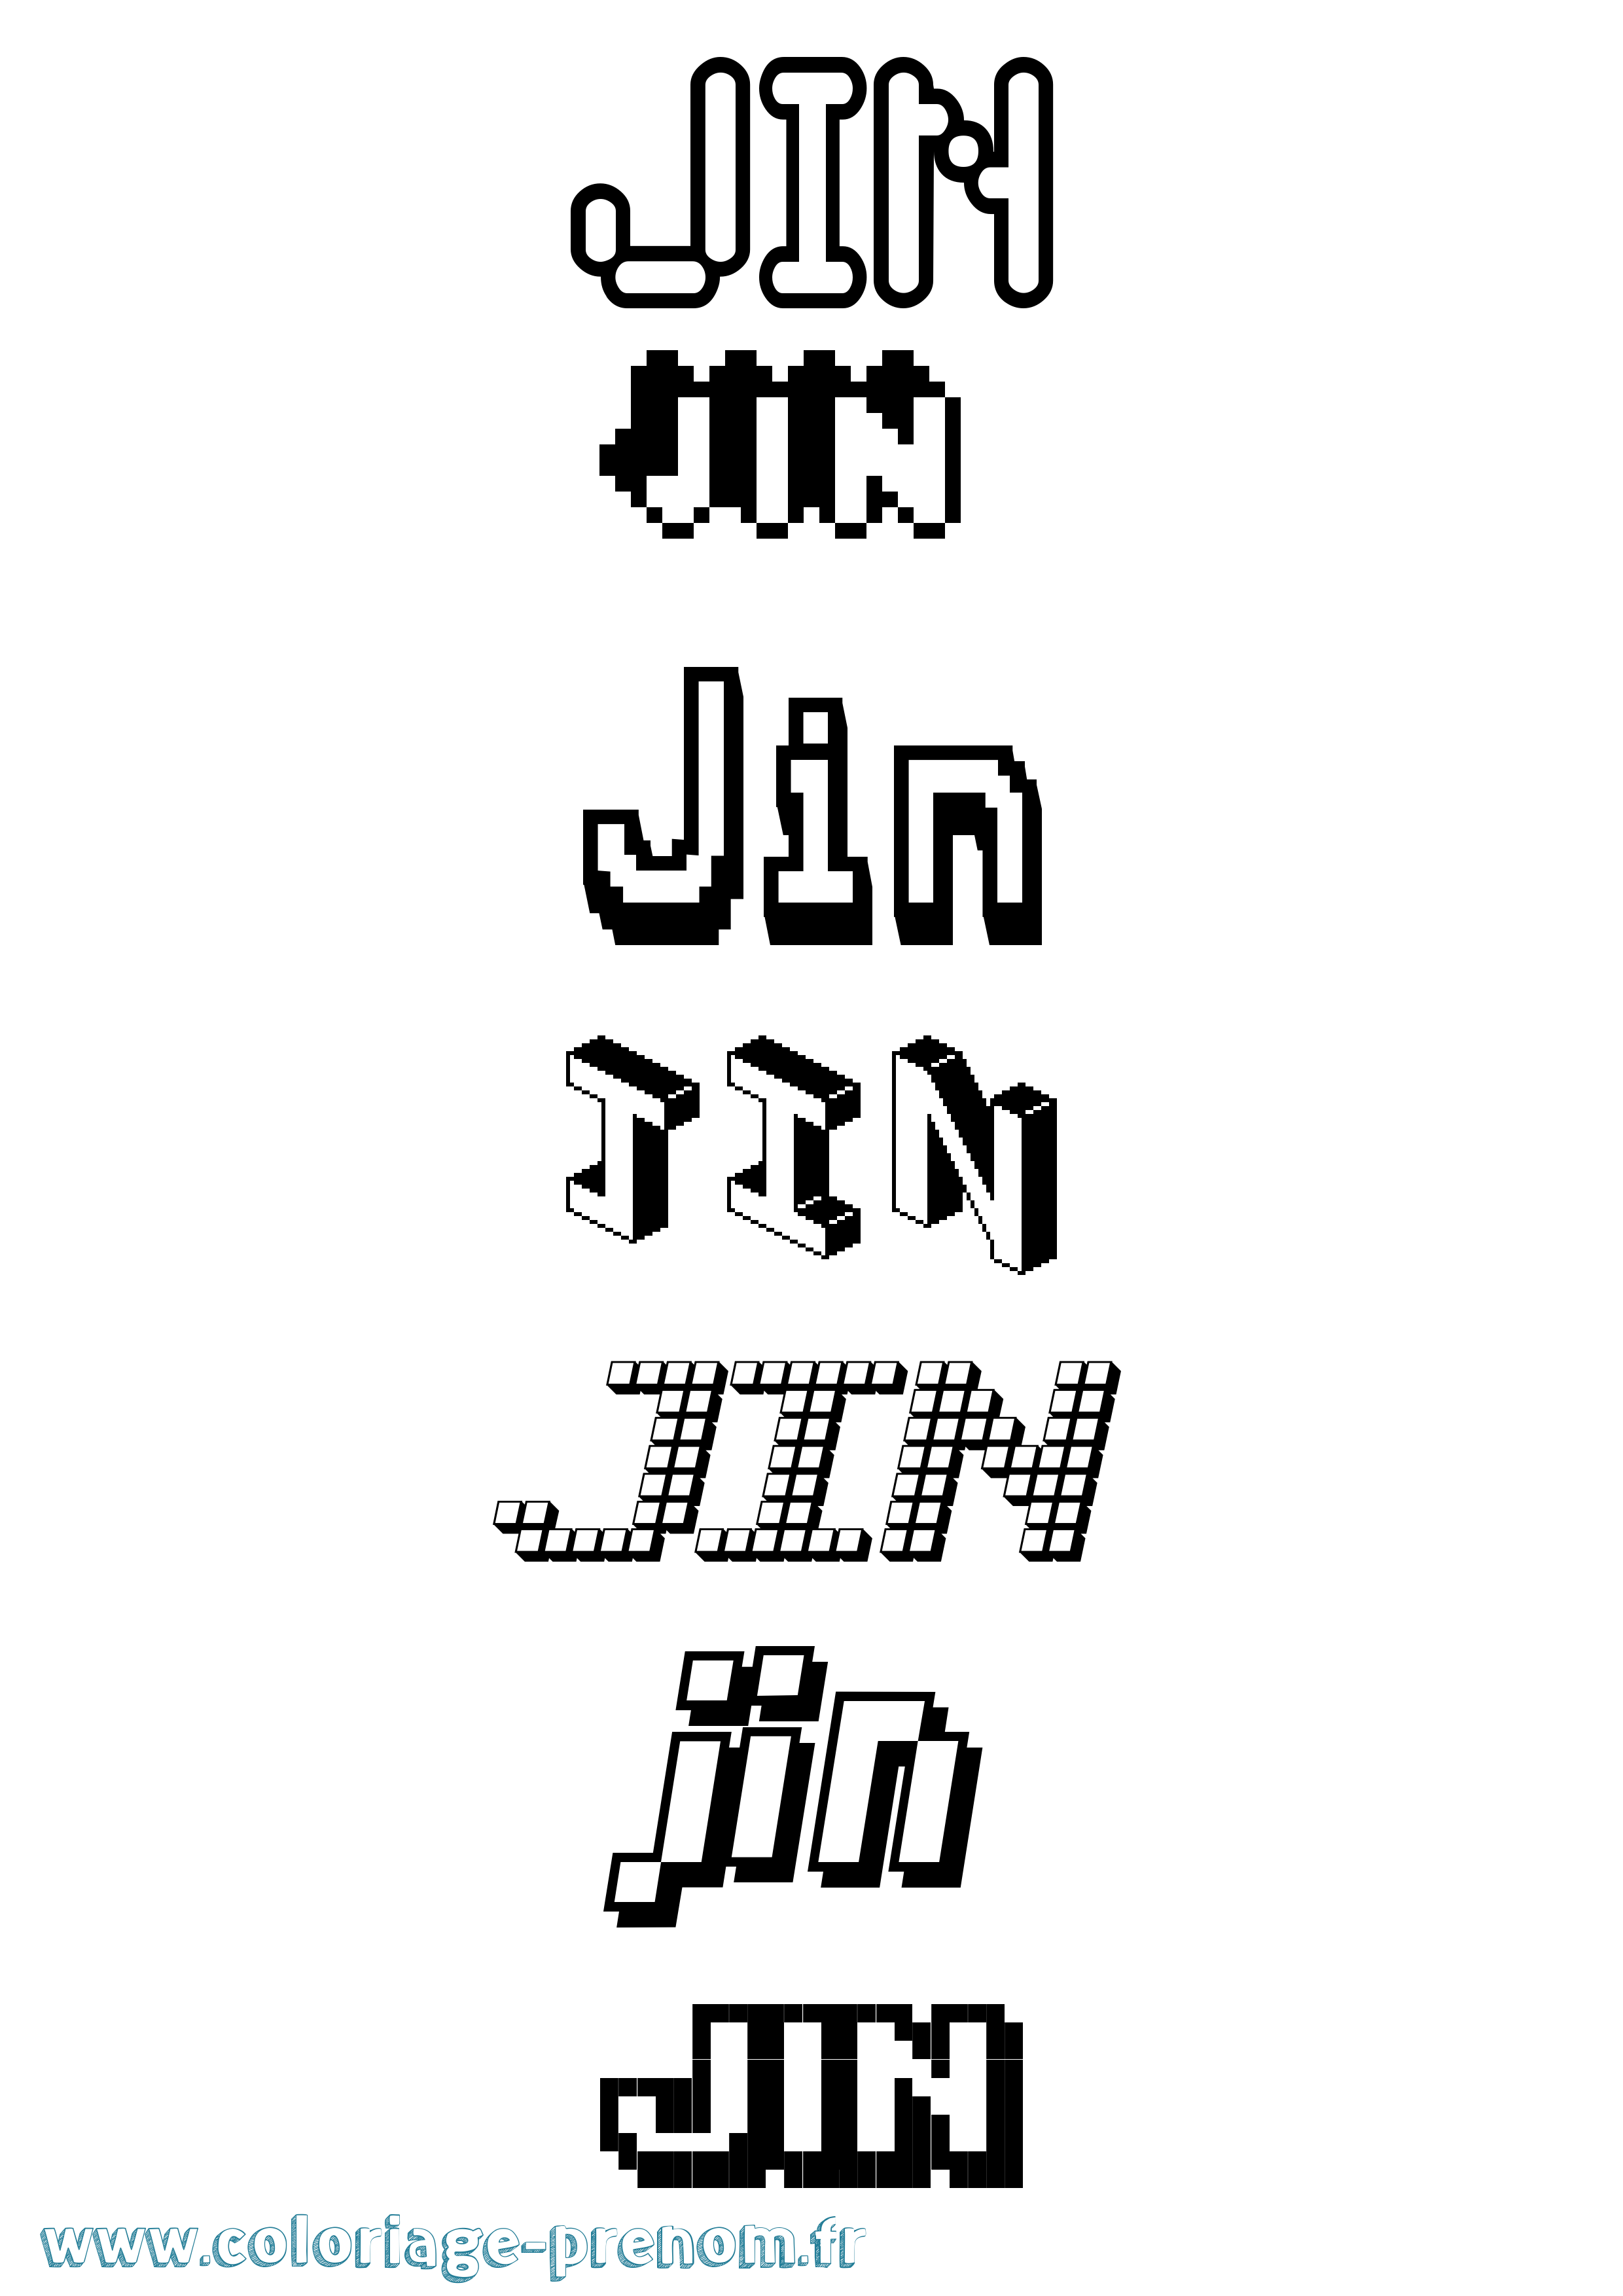 Coloriage prénom Jin Pixel